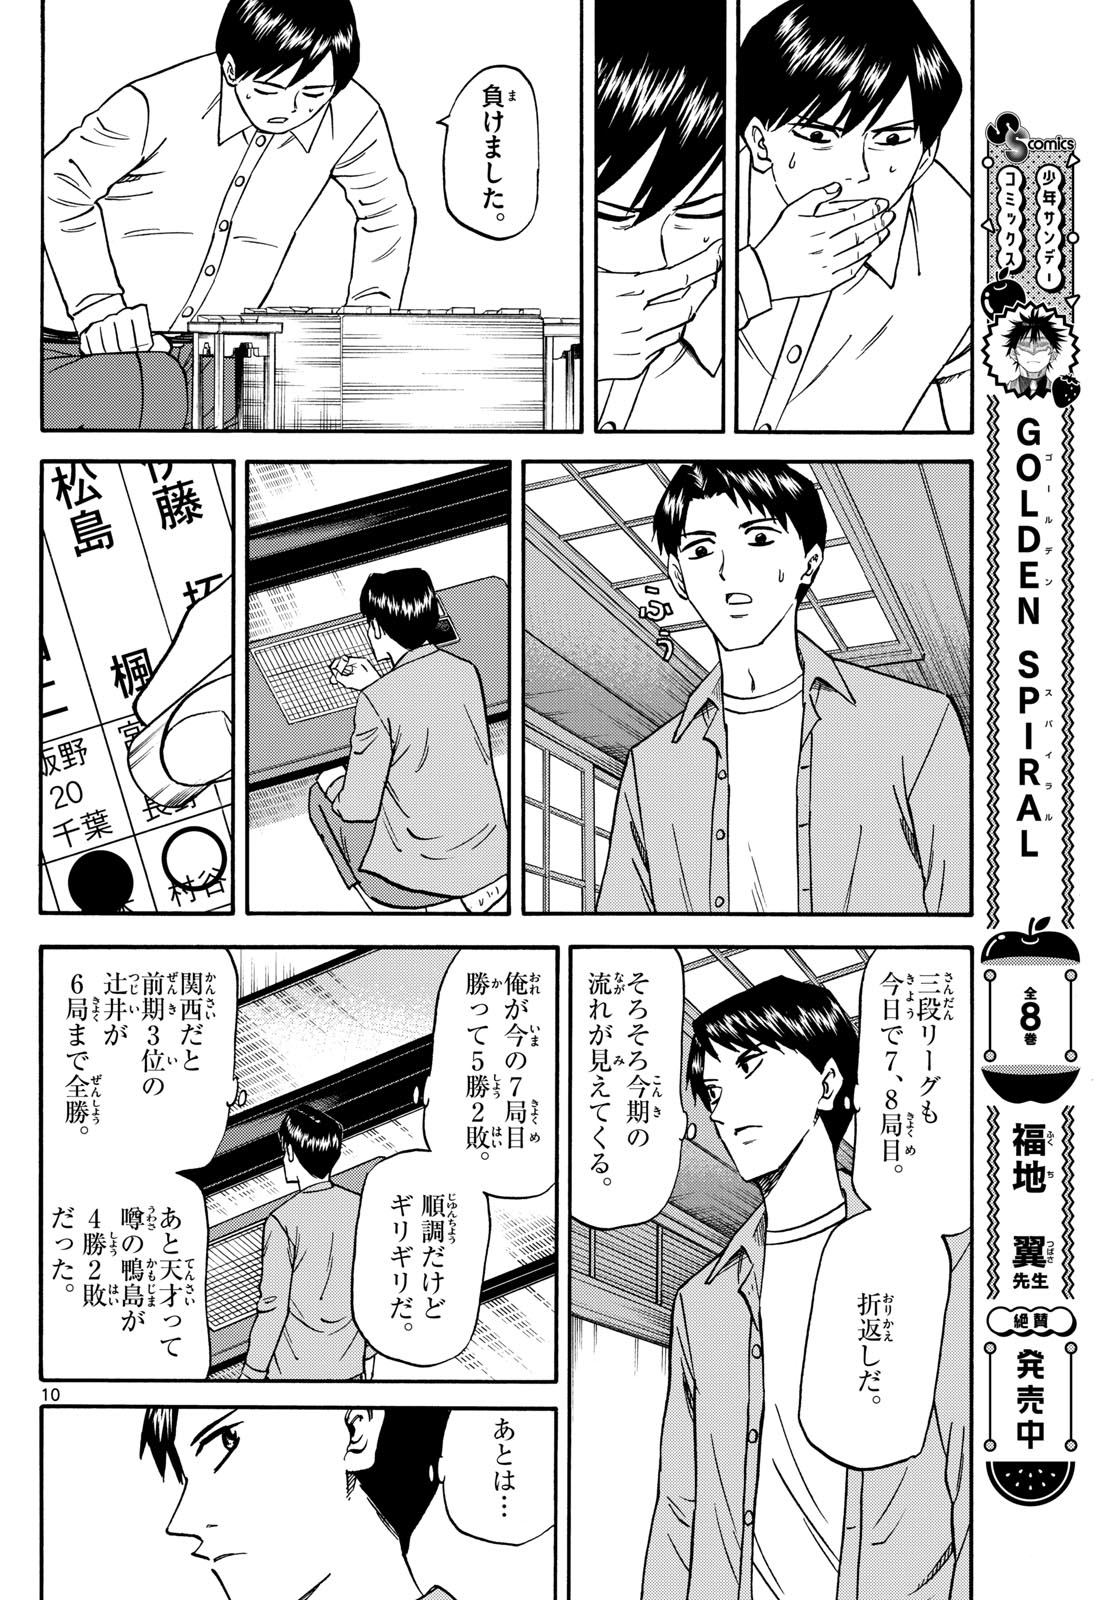 Tatsu to Ichigo - Chapter 172 - Page 10